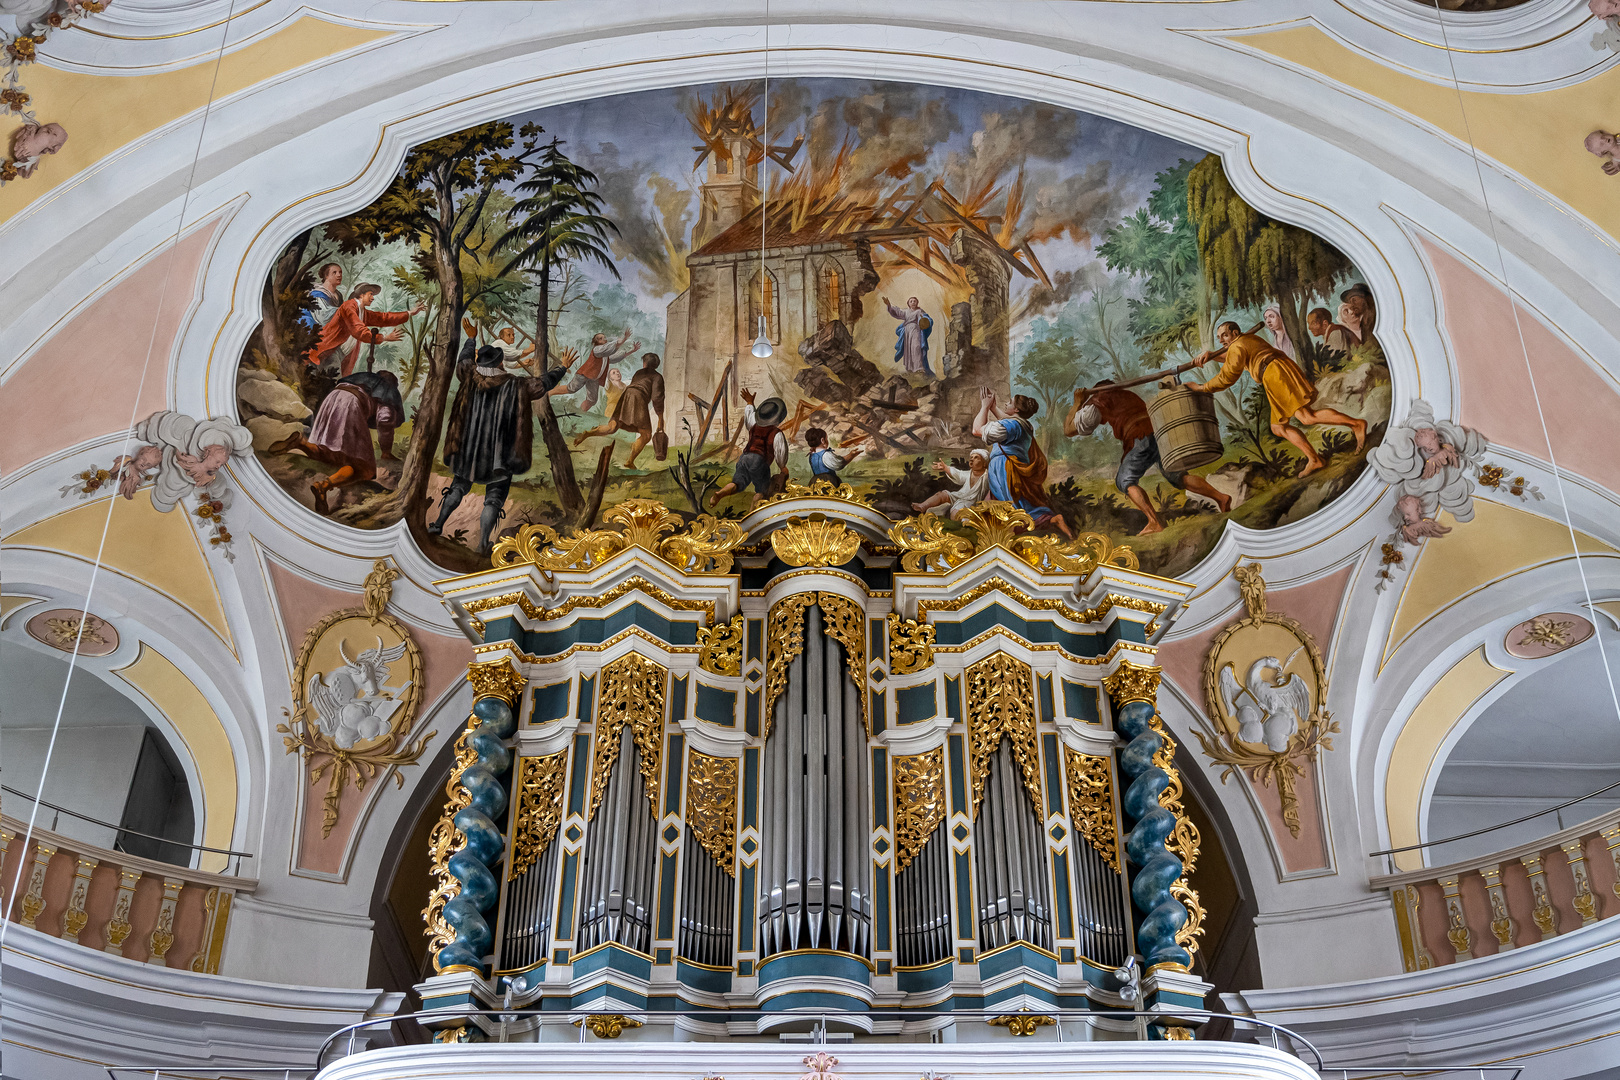 Mein Blick zur Orgel in St. Salvator